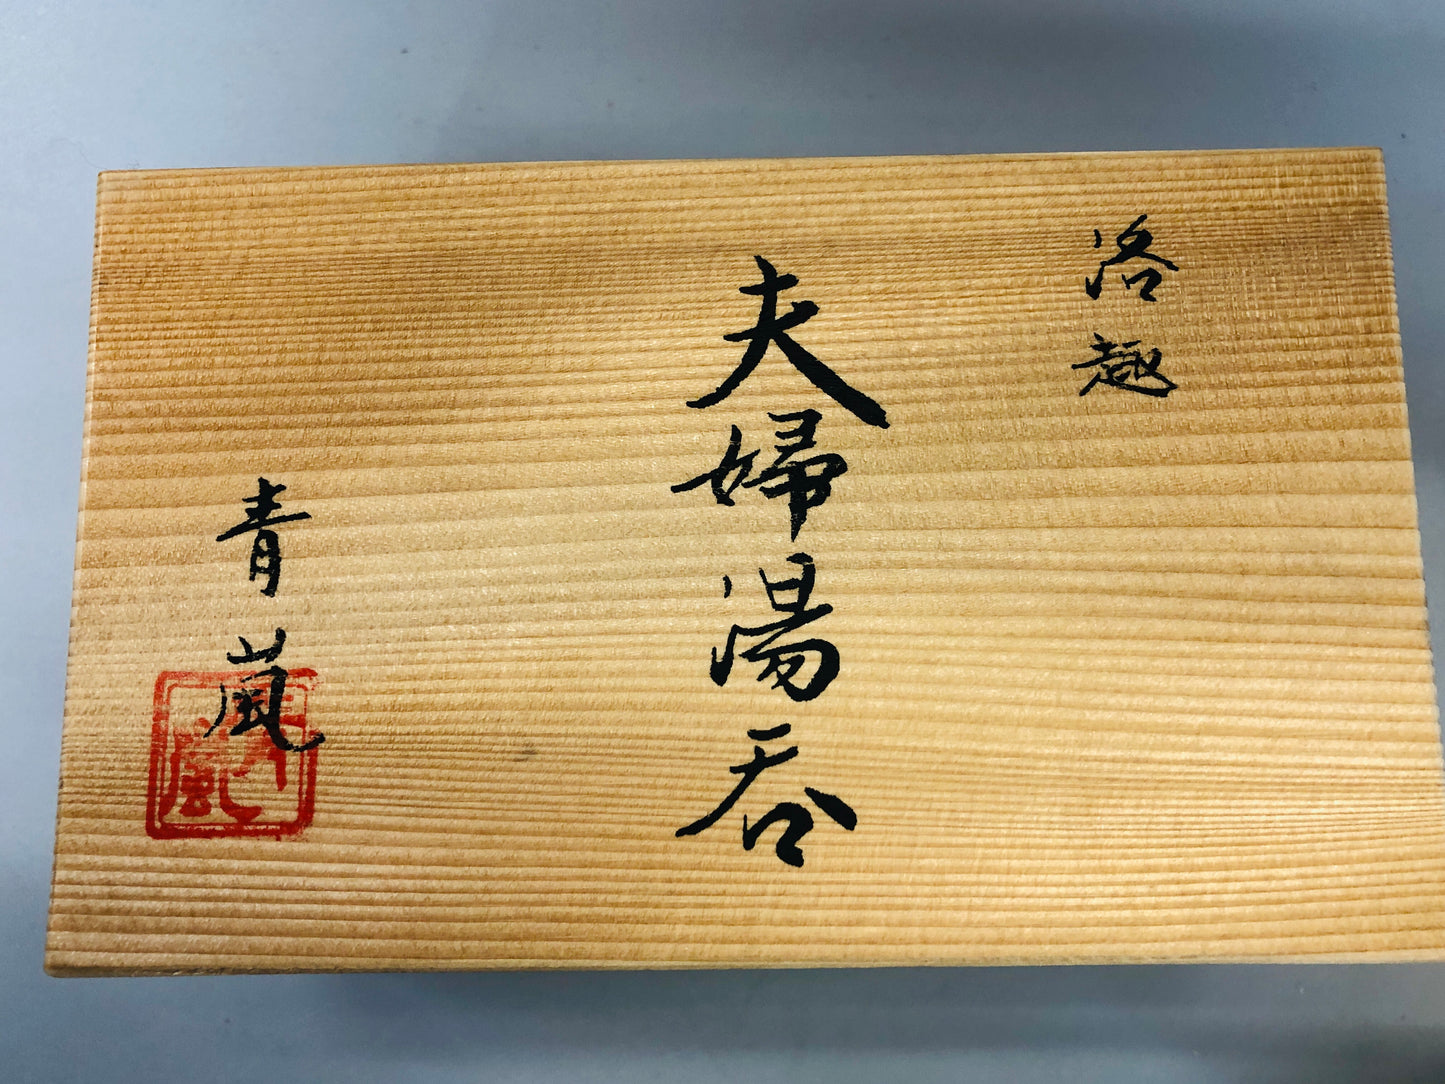 Y5383 YUNOMI Seto-ware cup signed box Japan antique tea ceremony pottery vintage